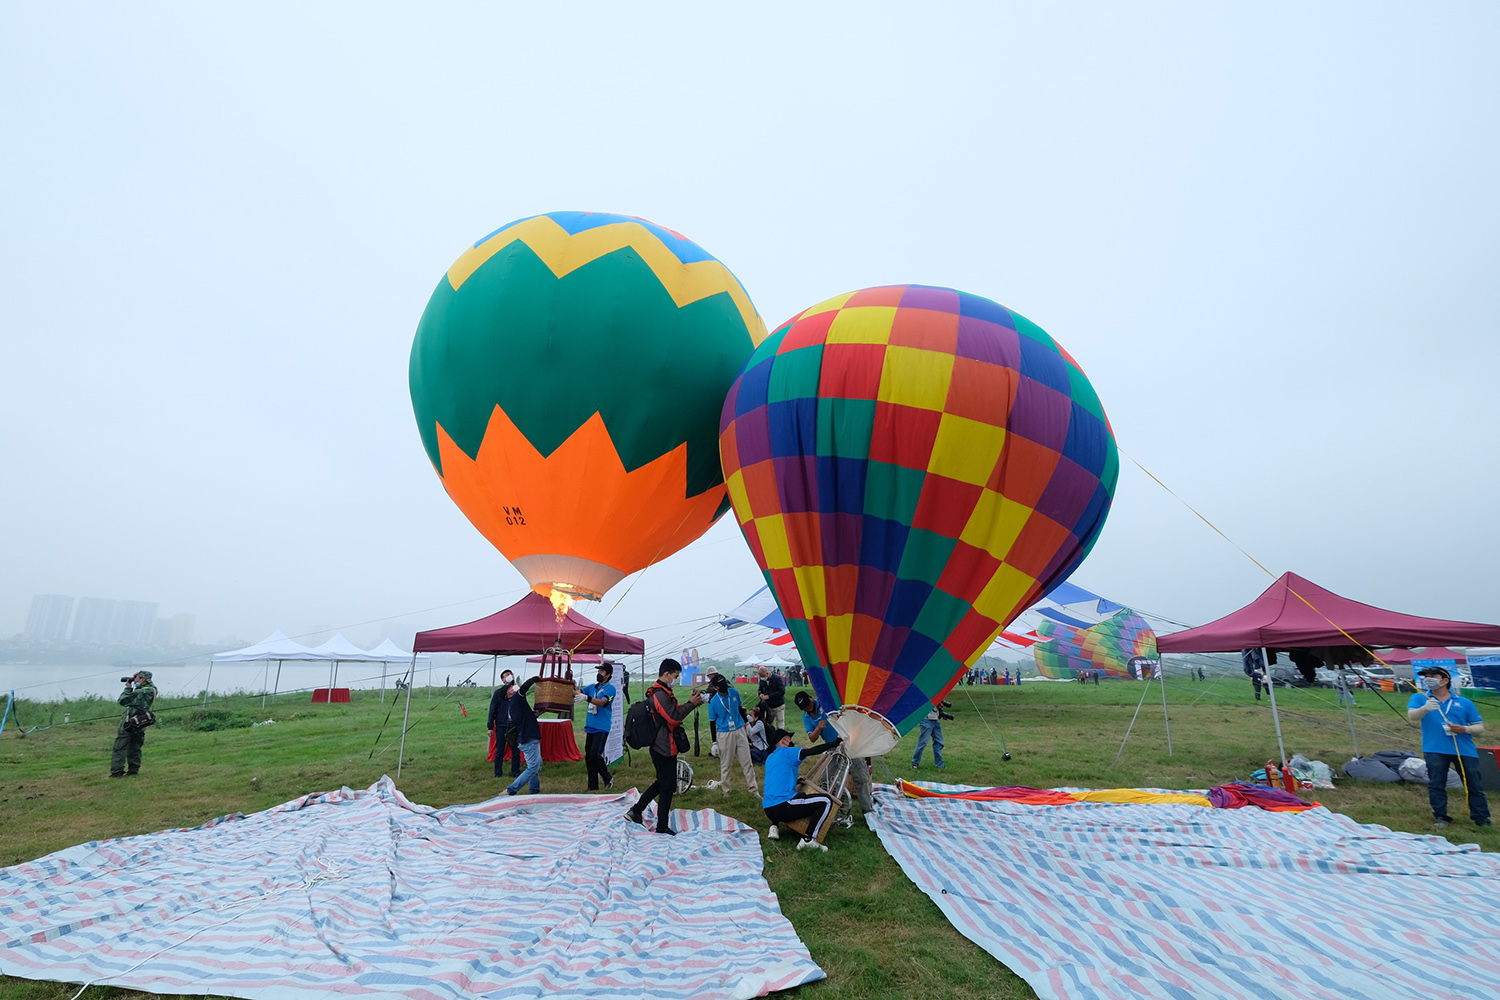 Khinh khí cầu: Khinh khí cầu là một trò chơi đầy thử thách, hãy cùng xem những hình ảnh đẹp của những chiếc khinh khí cầu đang bay trên bầu trời để cảm nhận sự thú vị và hứng khởi của trò chơi này.